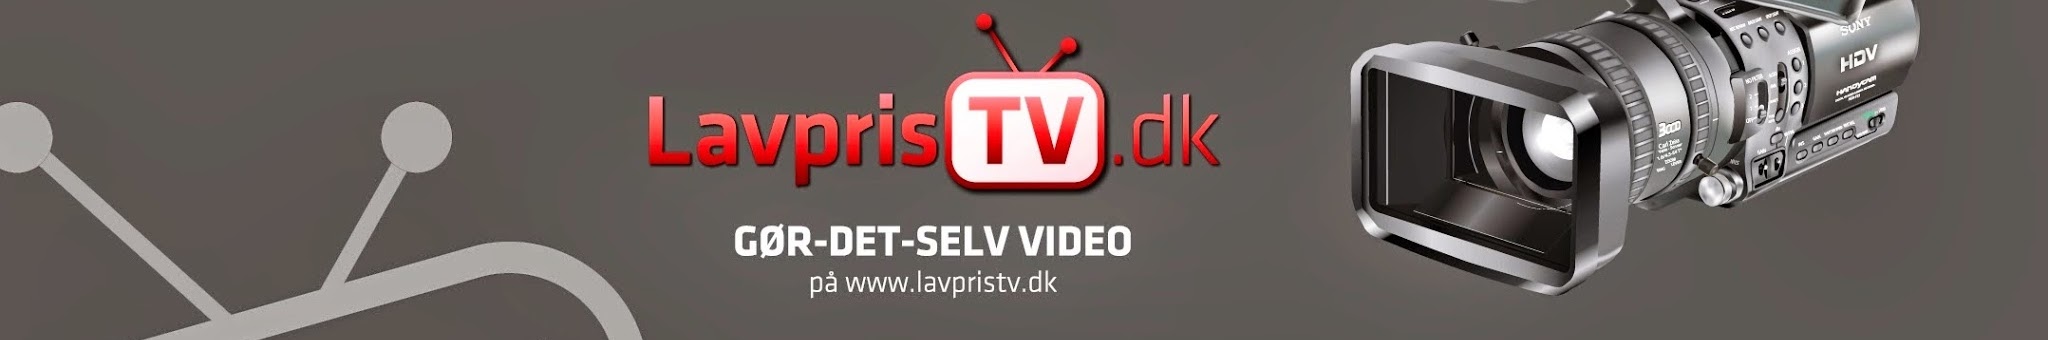 LavprisVVS - YouTube